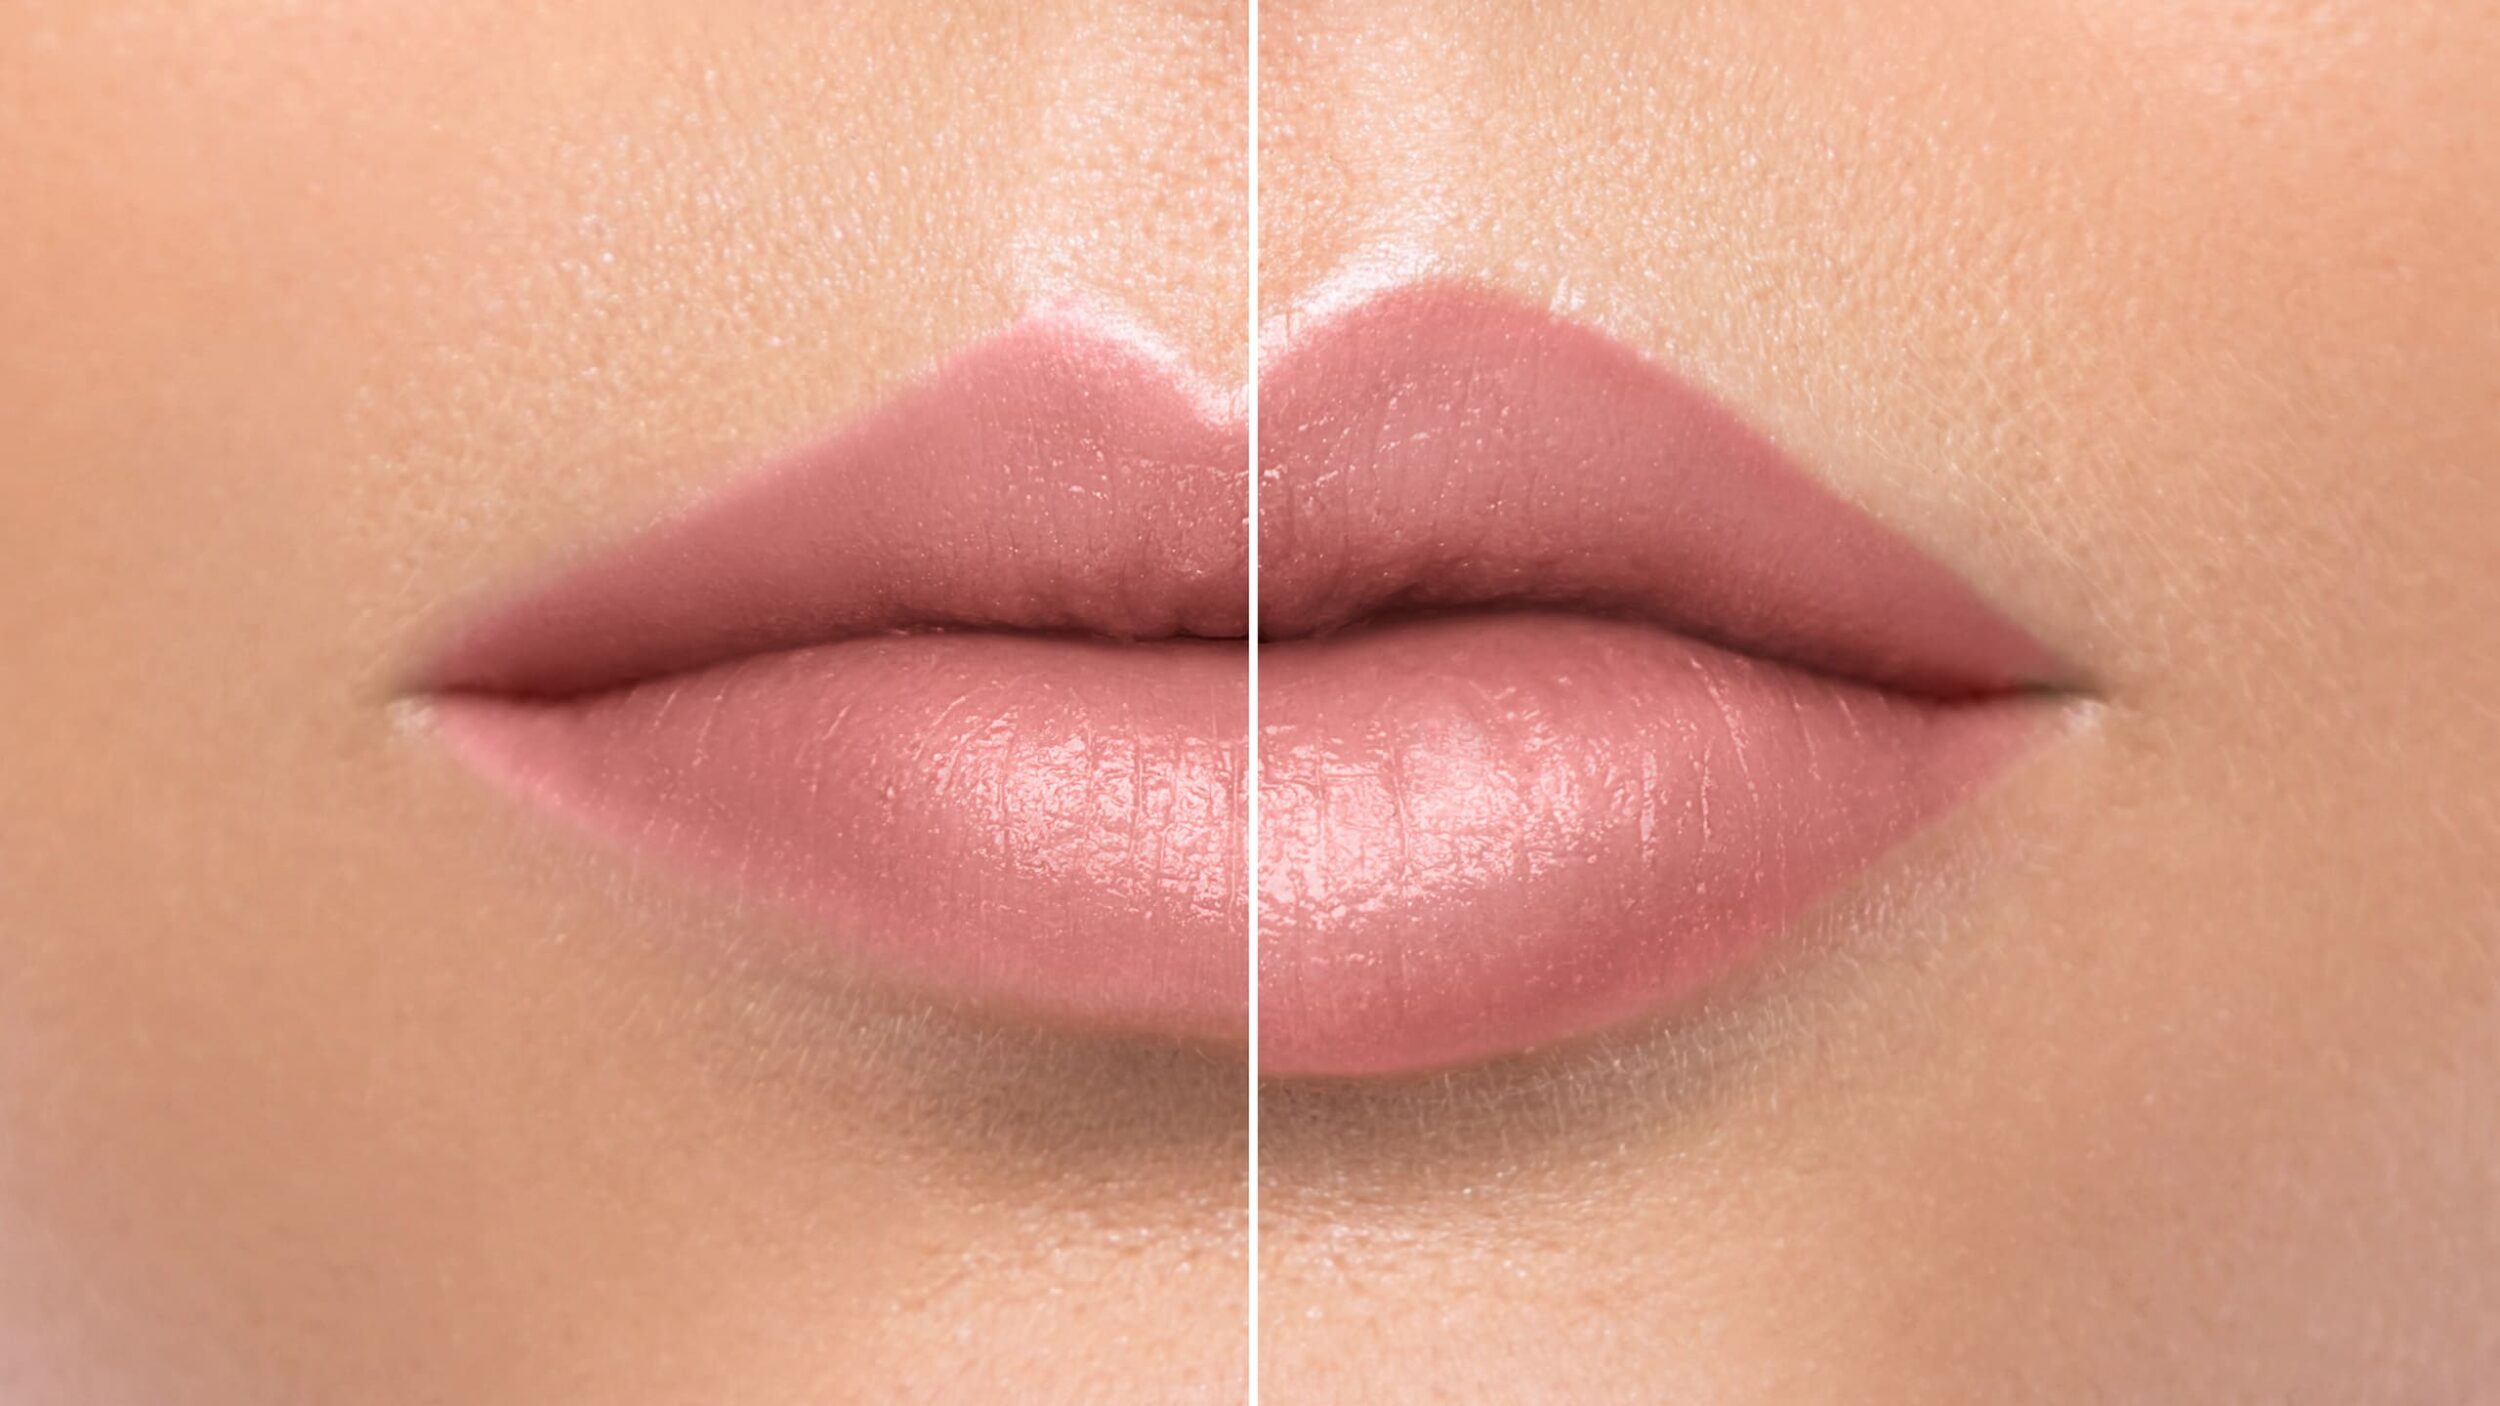 Vergleich dünnere und vollere Lippen